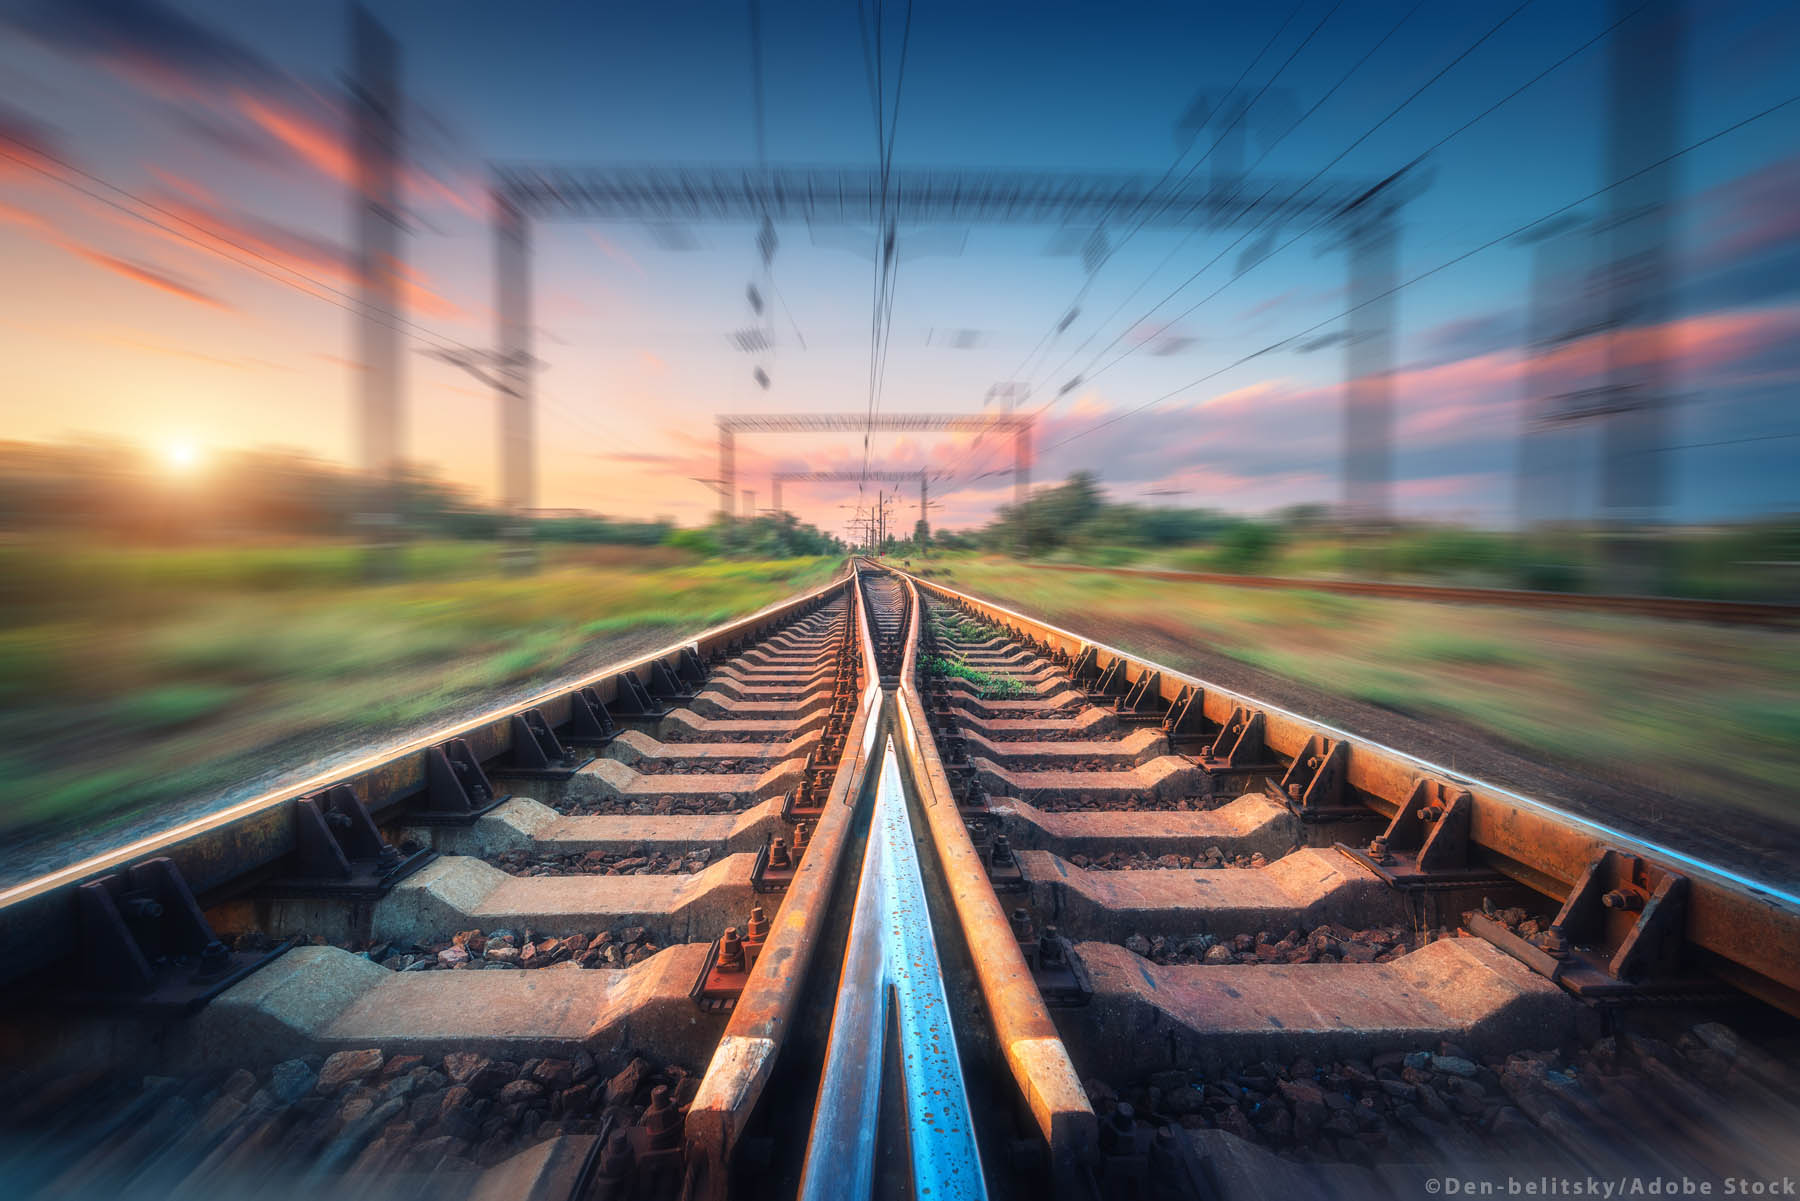 Σιδηρόδρομος: Σύνδεση εξπρές μετάξύ Παρισιού-Βερολίνου